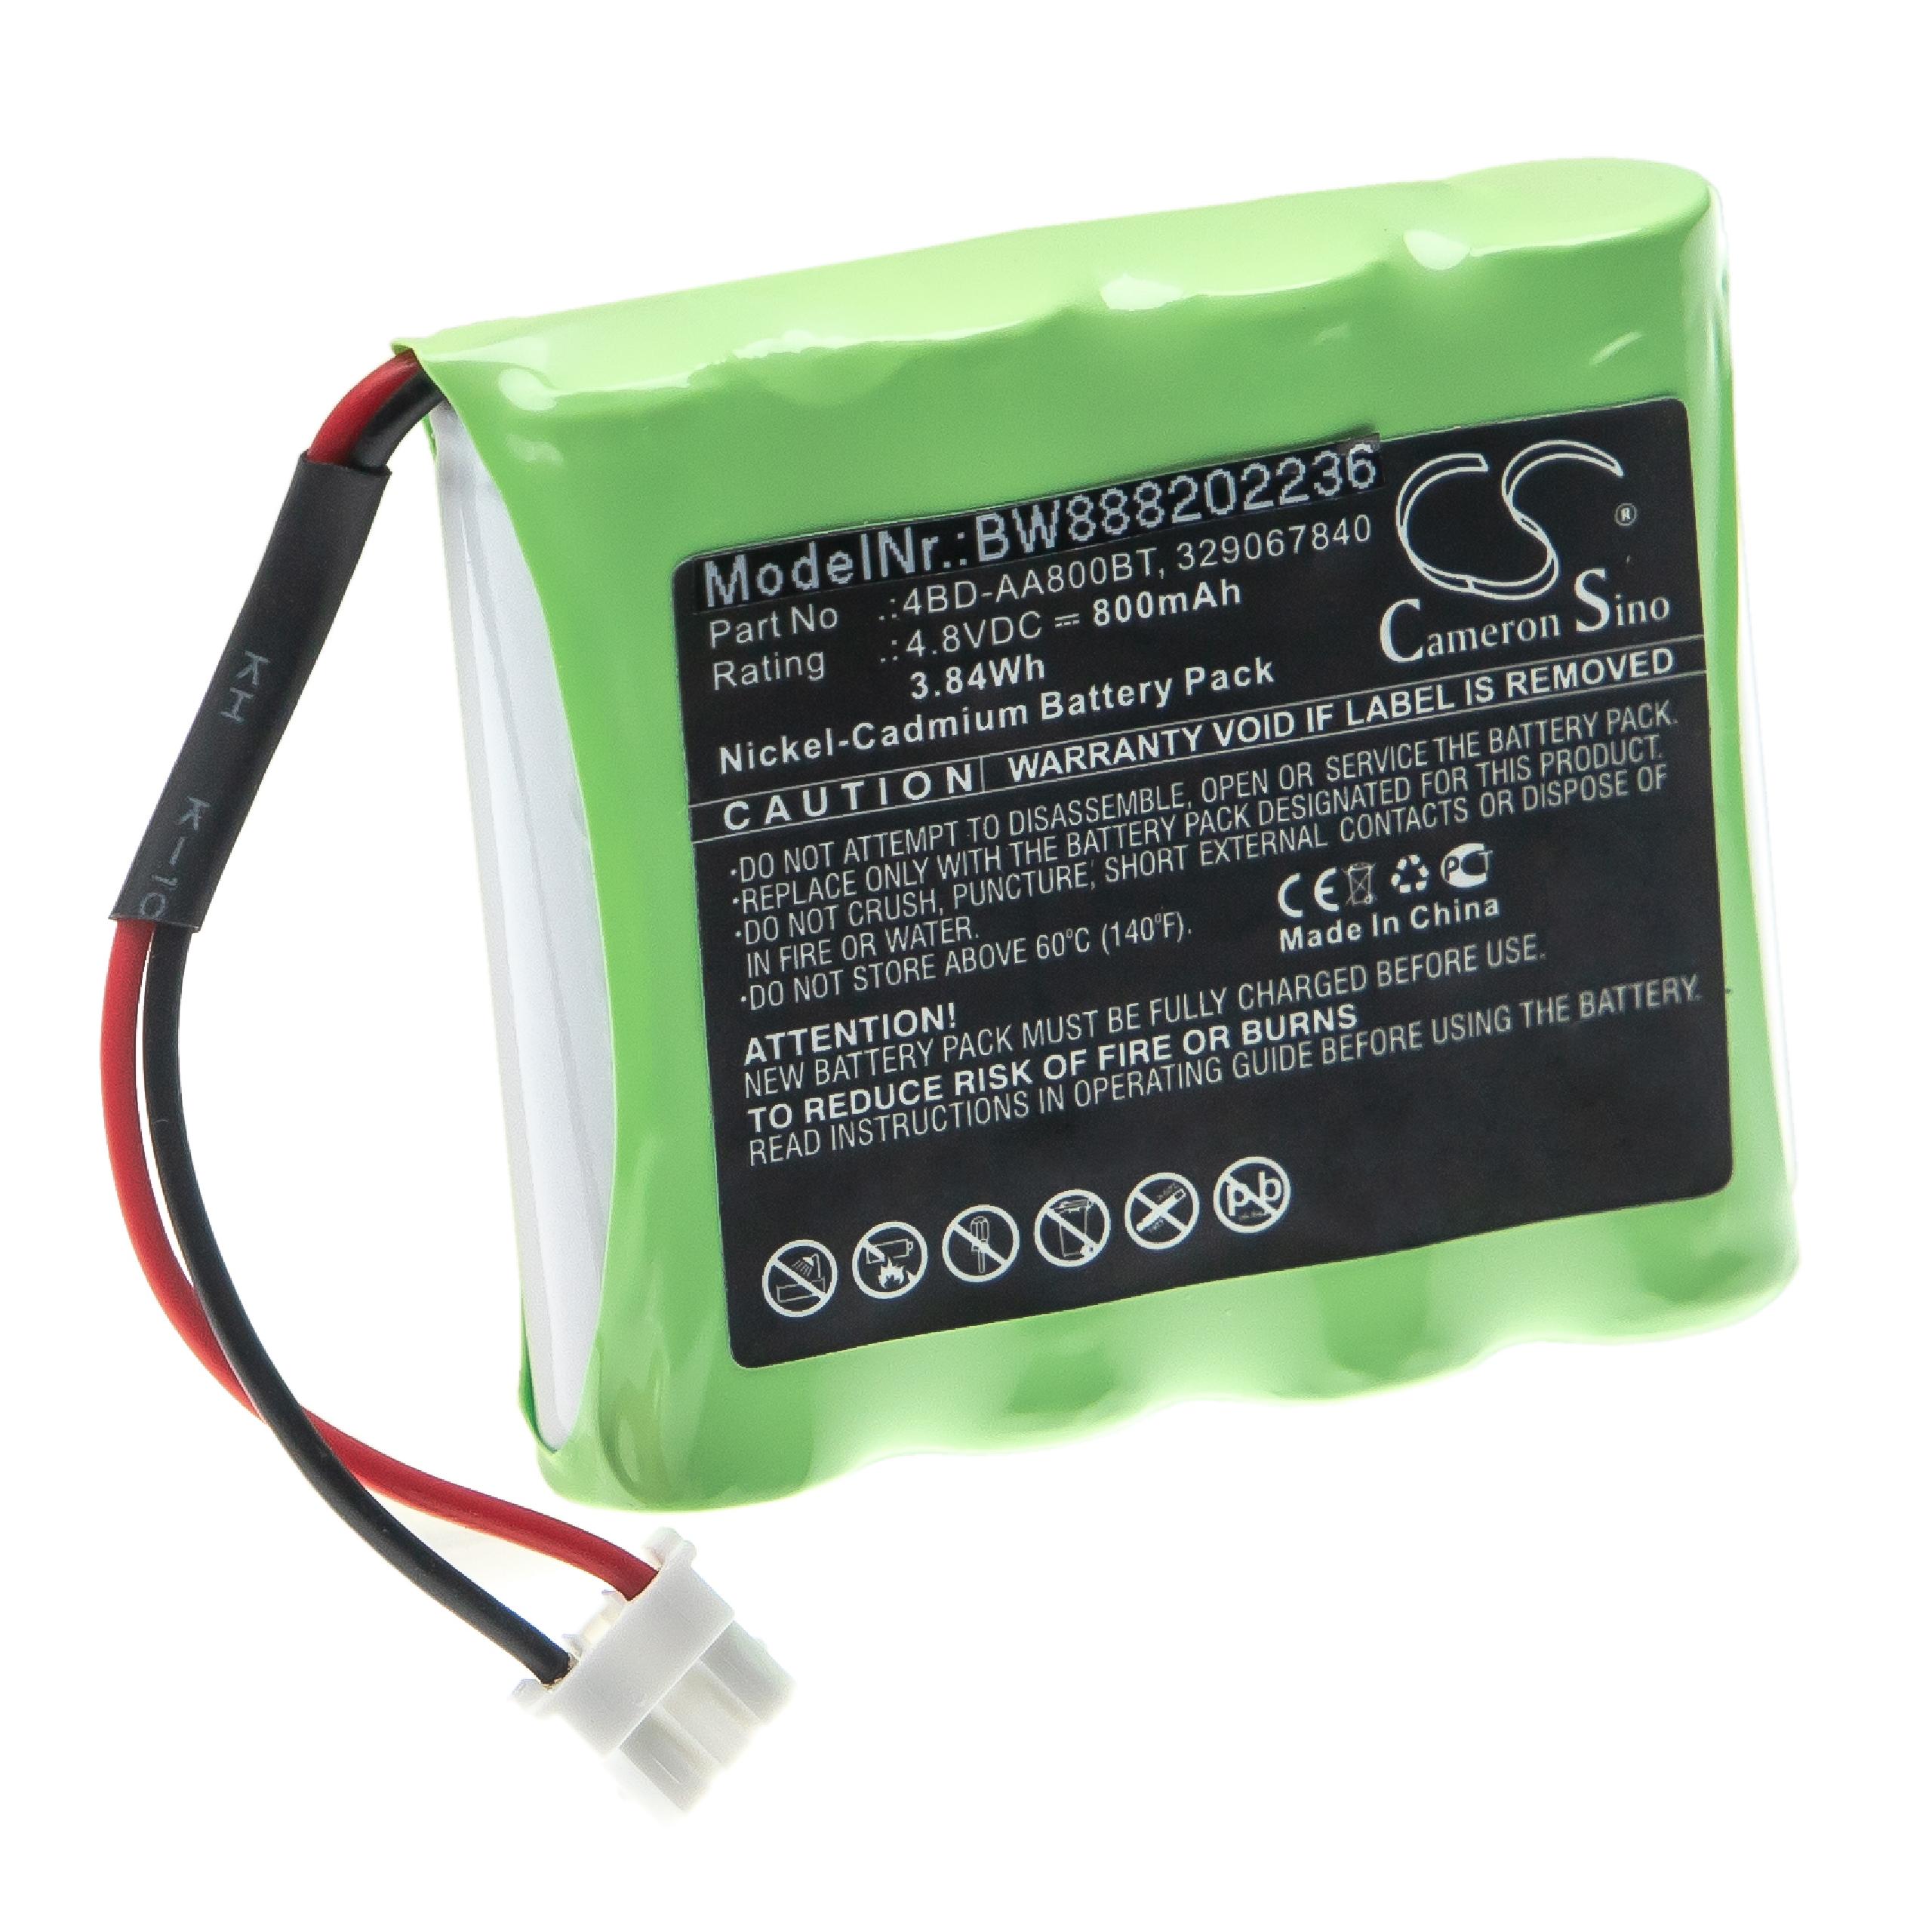 Akumulator do oświetlenia awaryjnego zamiennik Schneider 4BD-AA800BT, 329067840 - 800 mAh 4,8 V NiCd